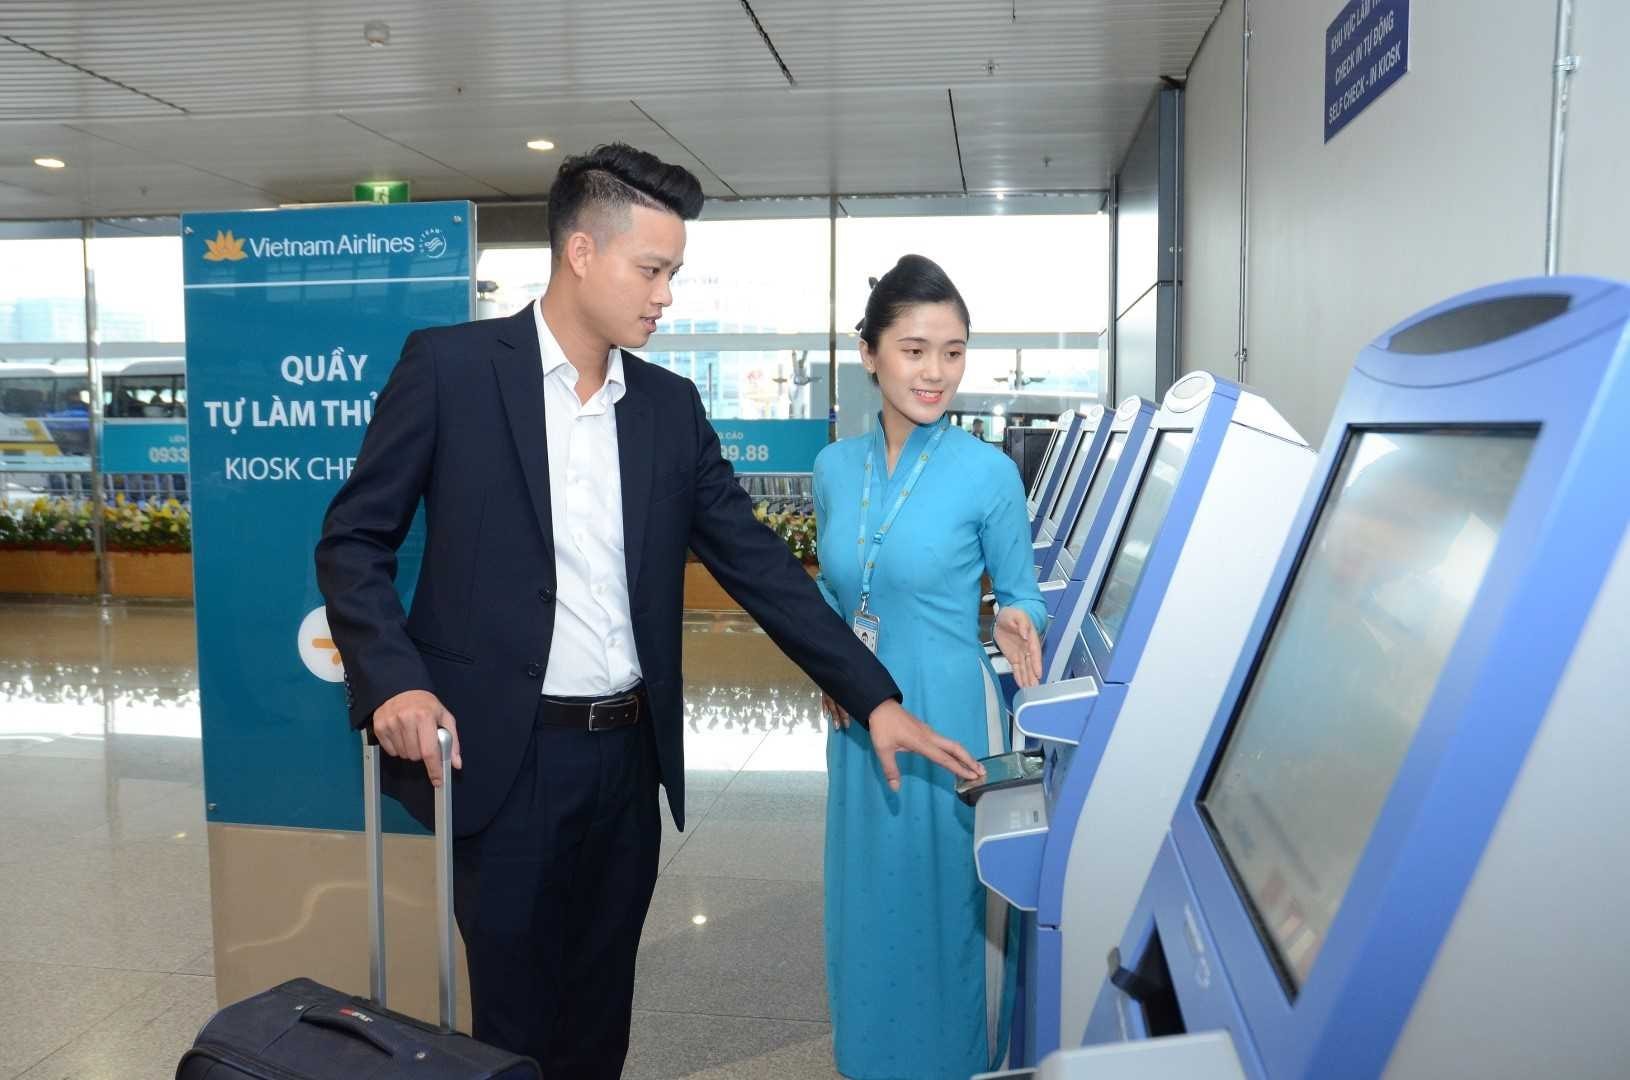 Check-in tại kiosk hãng Vietnam Airlines ở sân bay